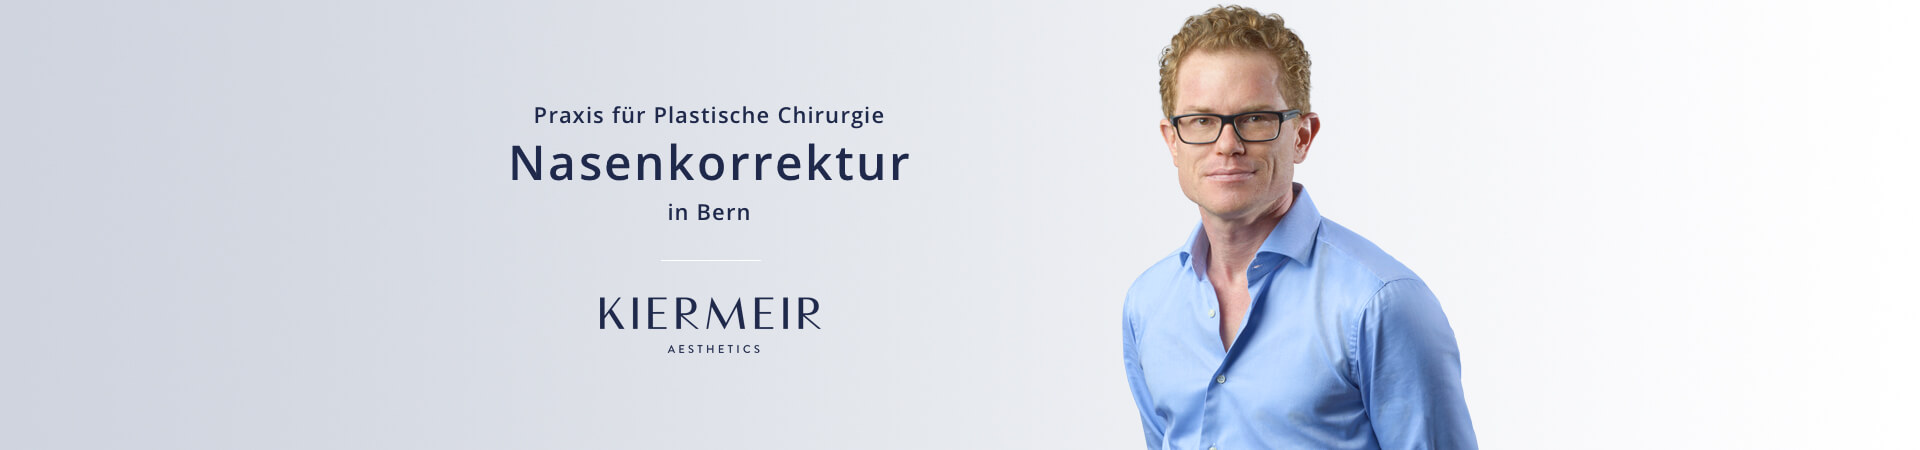 Nasenkorrektur in Bern - Dr. David Kiermeir 